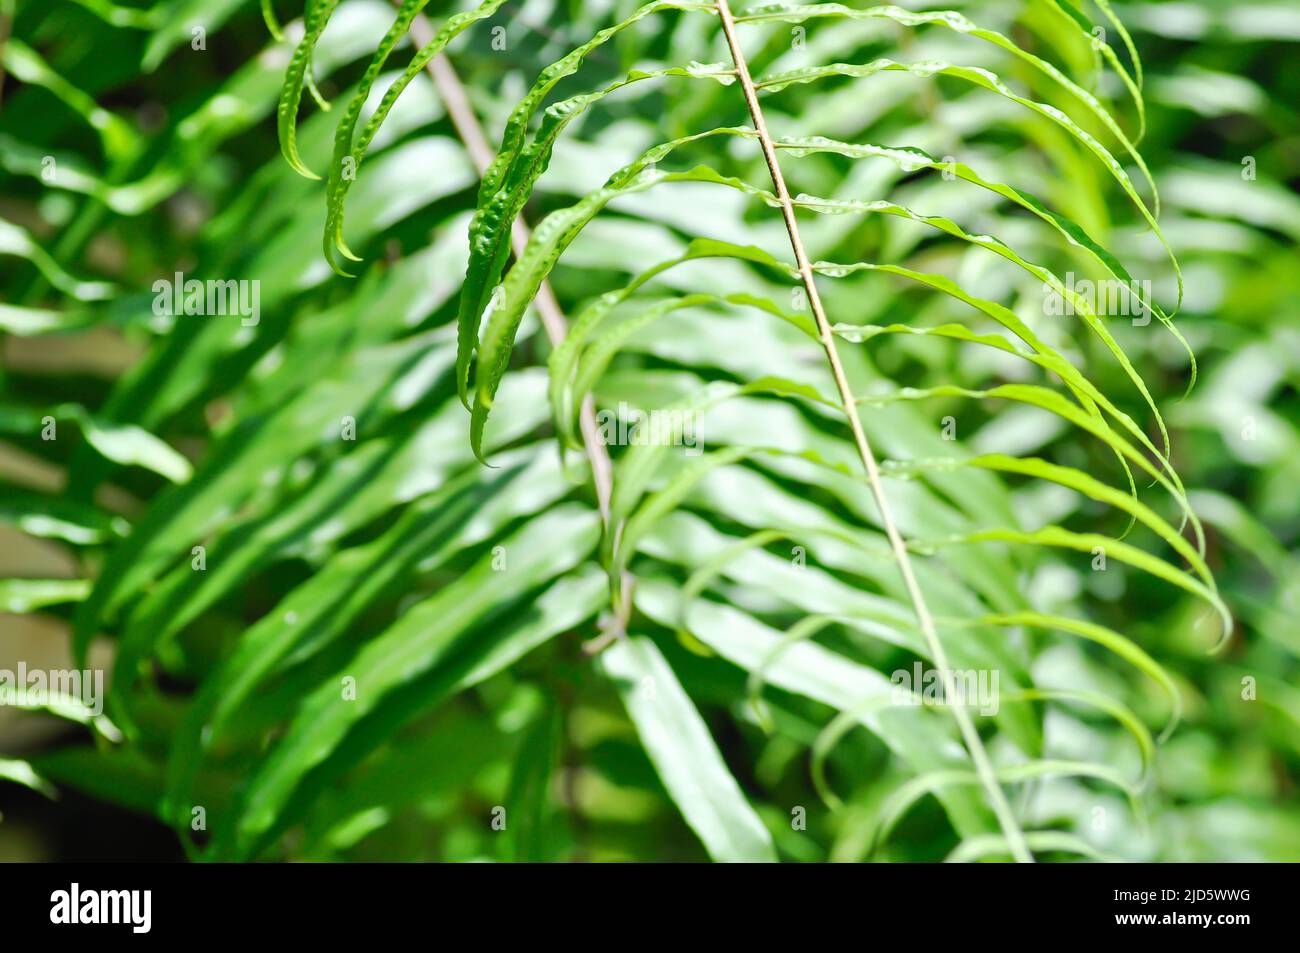 fern or lomariopsidaceae, Nephrolepidaceae or Nephrolepis or Nephrolepis sp or  Nephrolepis sp cultivar plant Stock Photo